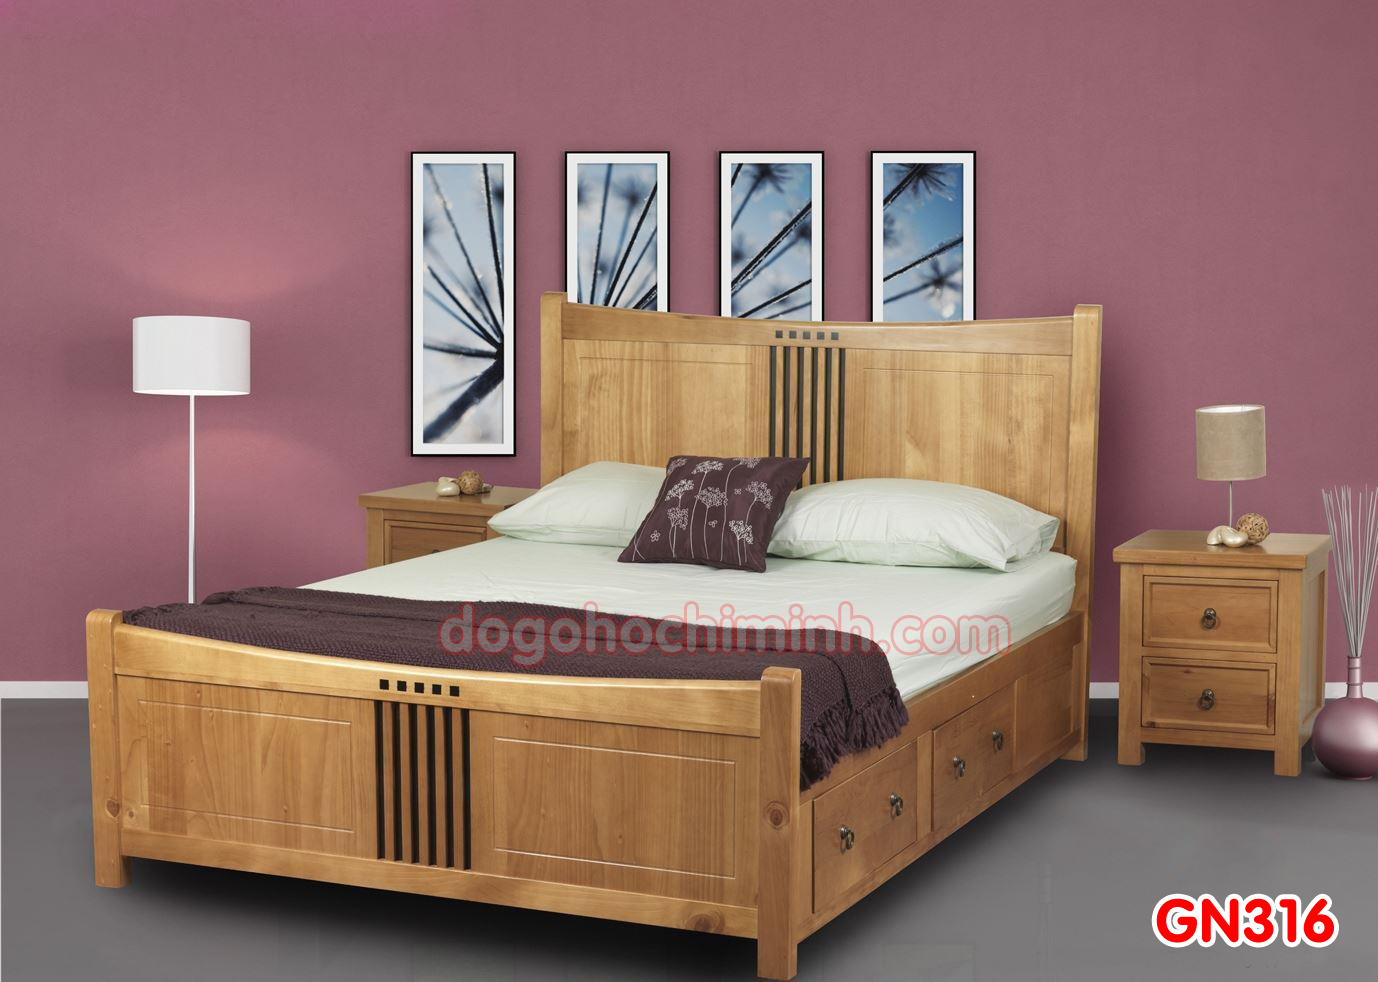 Giường ngủ gỗ đẹp cao cấp giá rẻ GN316